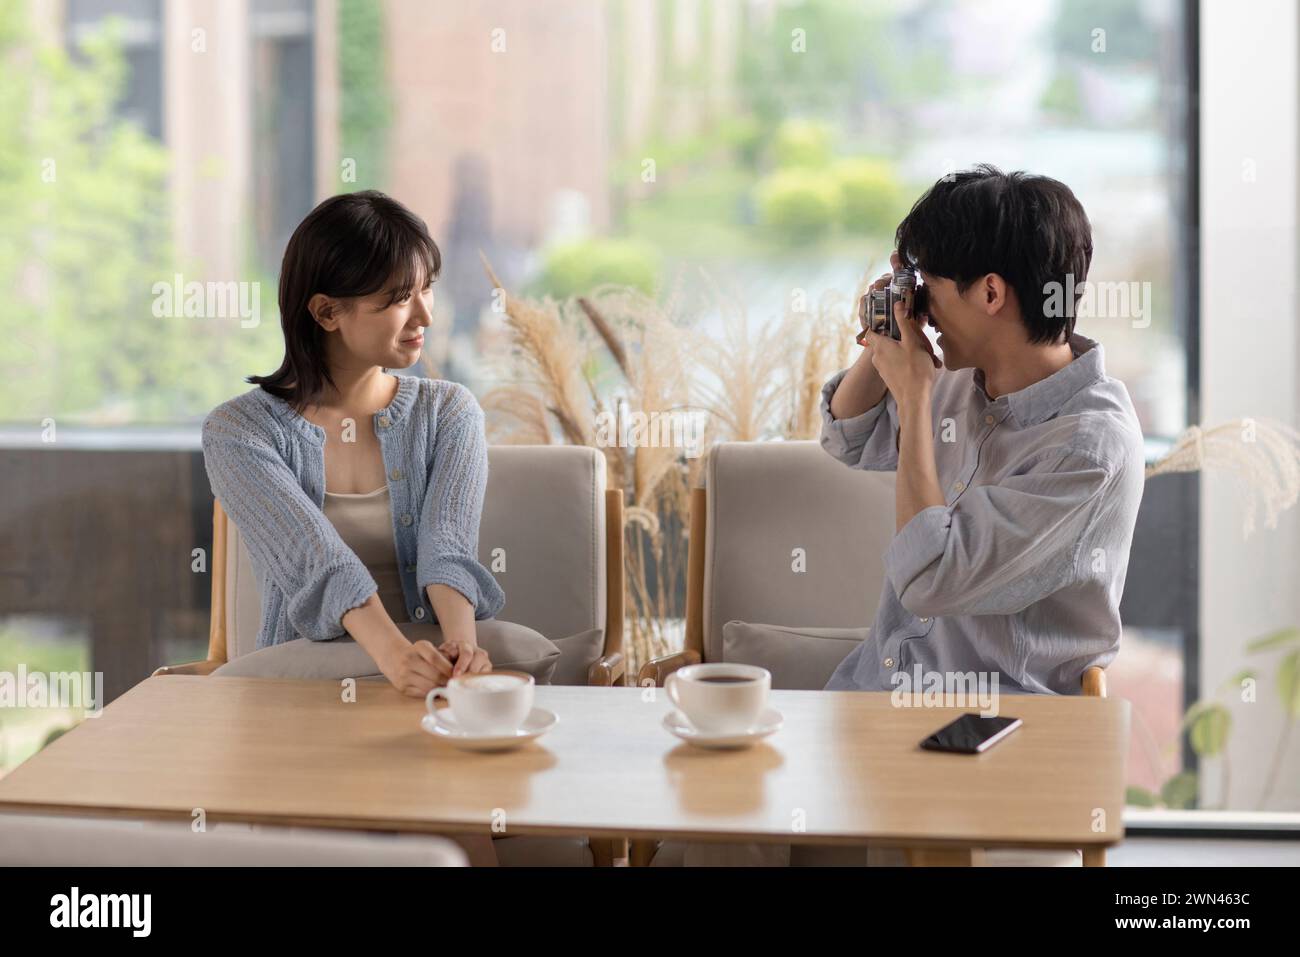 Young couple taking photos in café Stock Photo